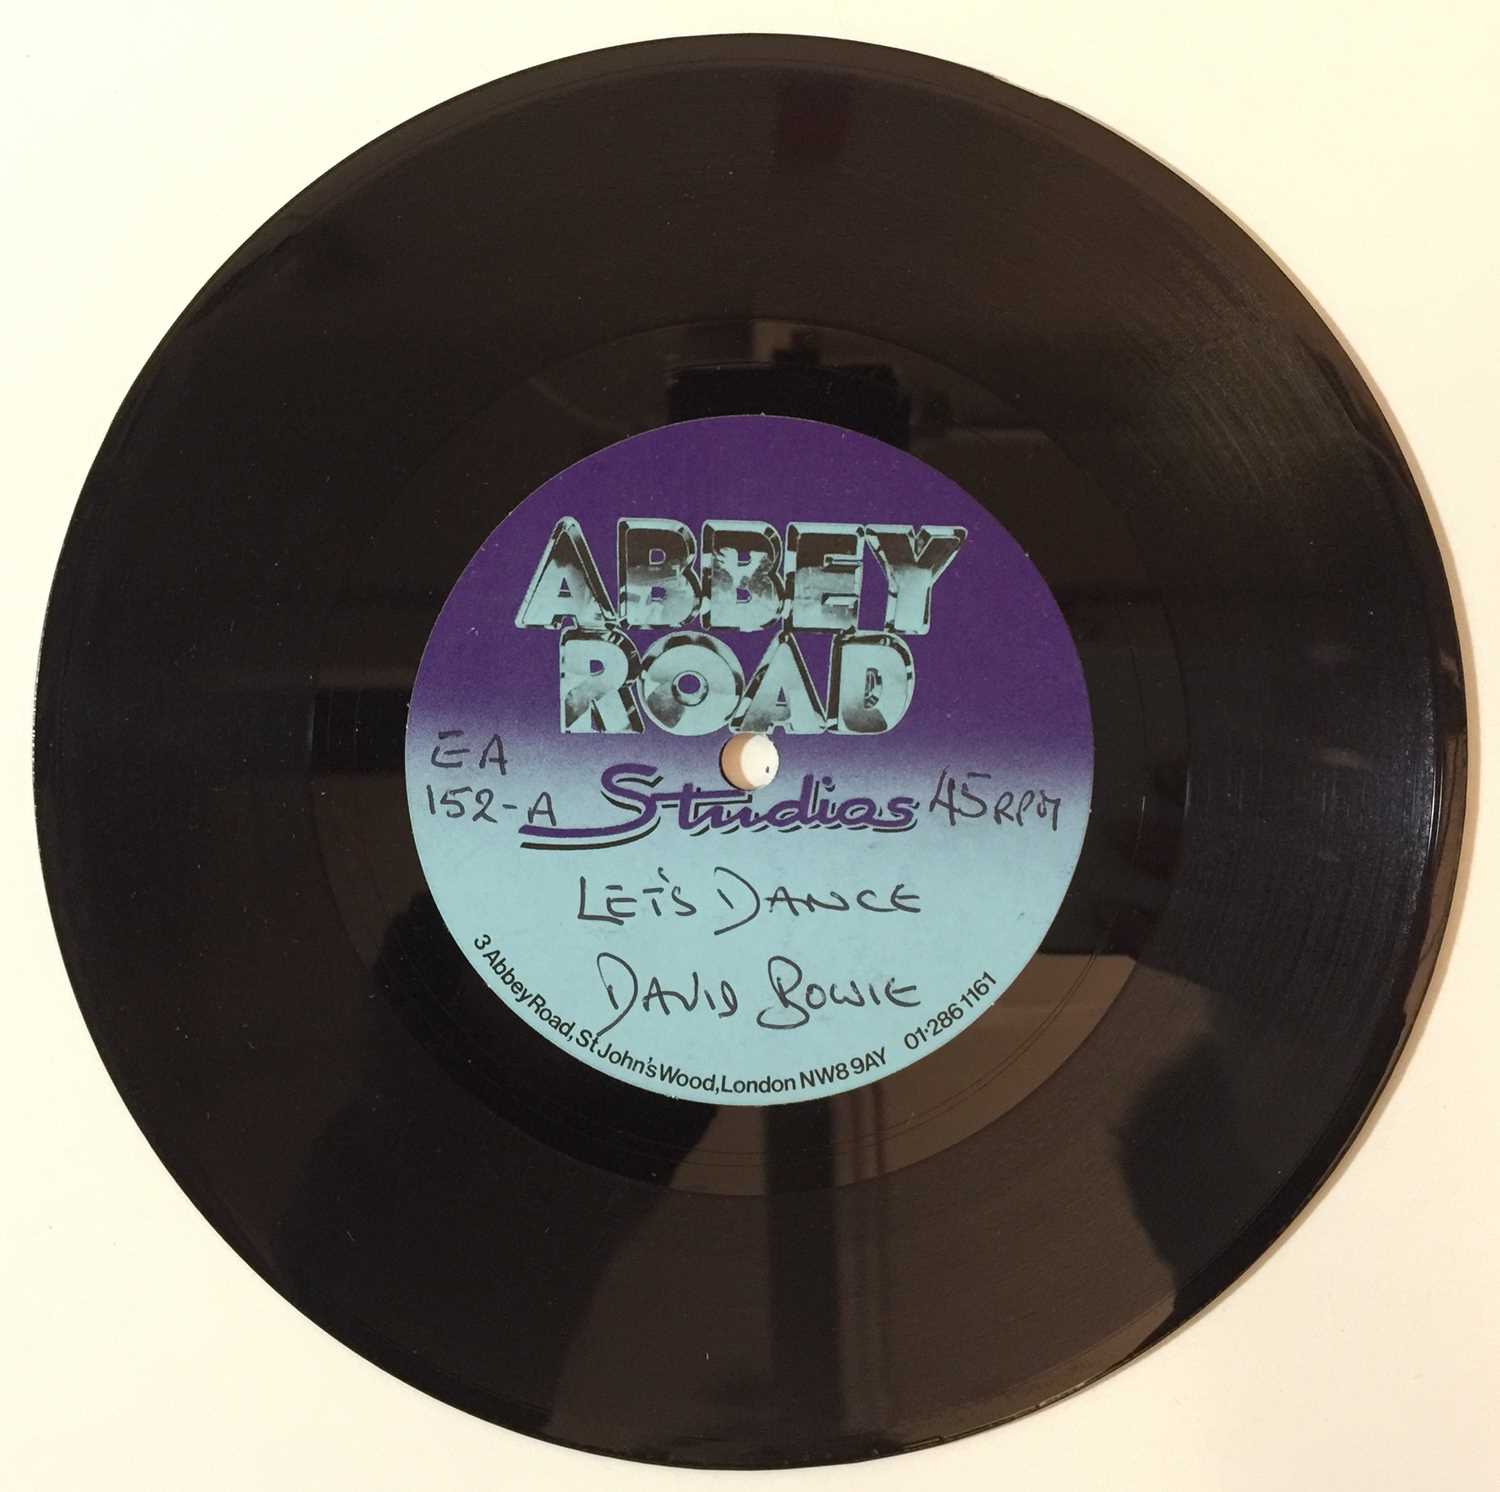 Lot 44 - David Bowie - Let's Dance 7" (Abbey Road Acetate)